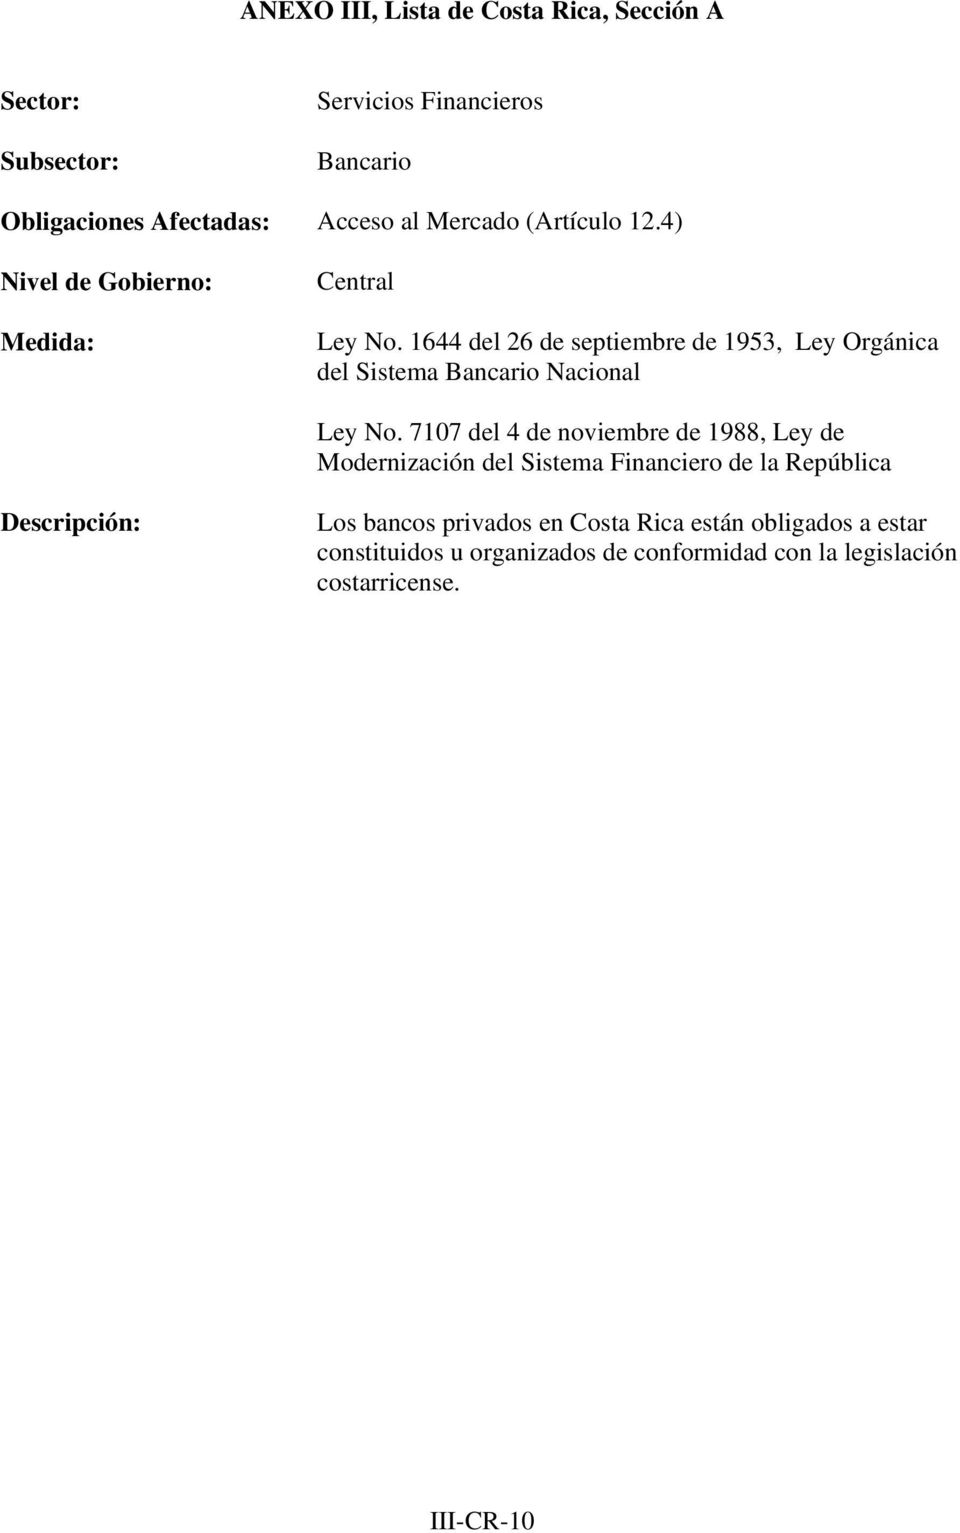 7107 del 4 de noviembre de 1988, Ley de Modernización del Sistema Financiero de la República